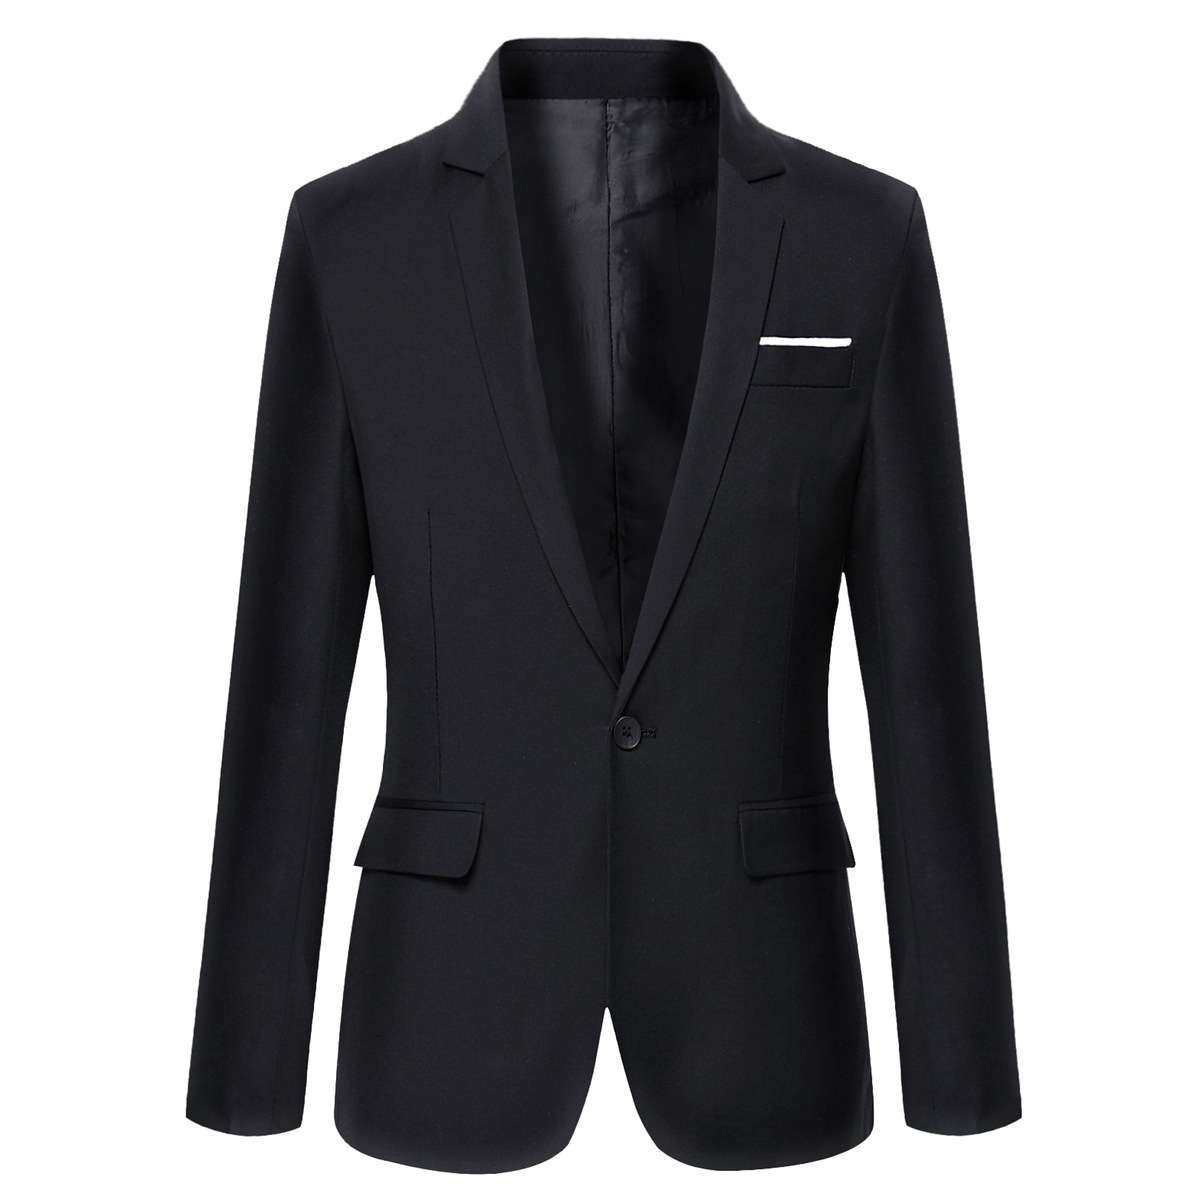 M015 suit jacket men's 2018 men slim fit...